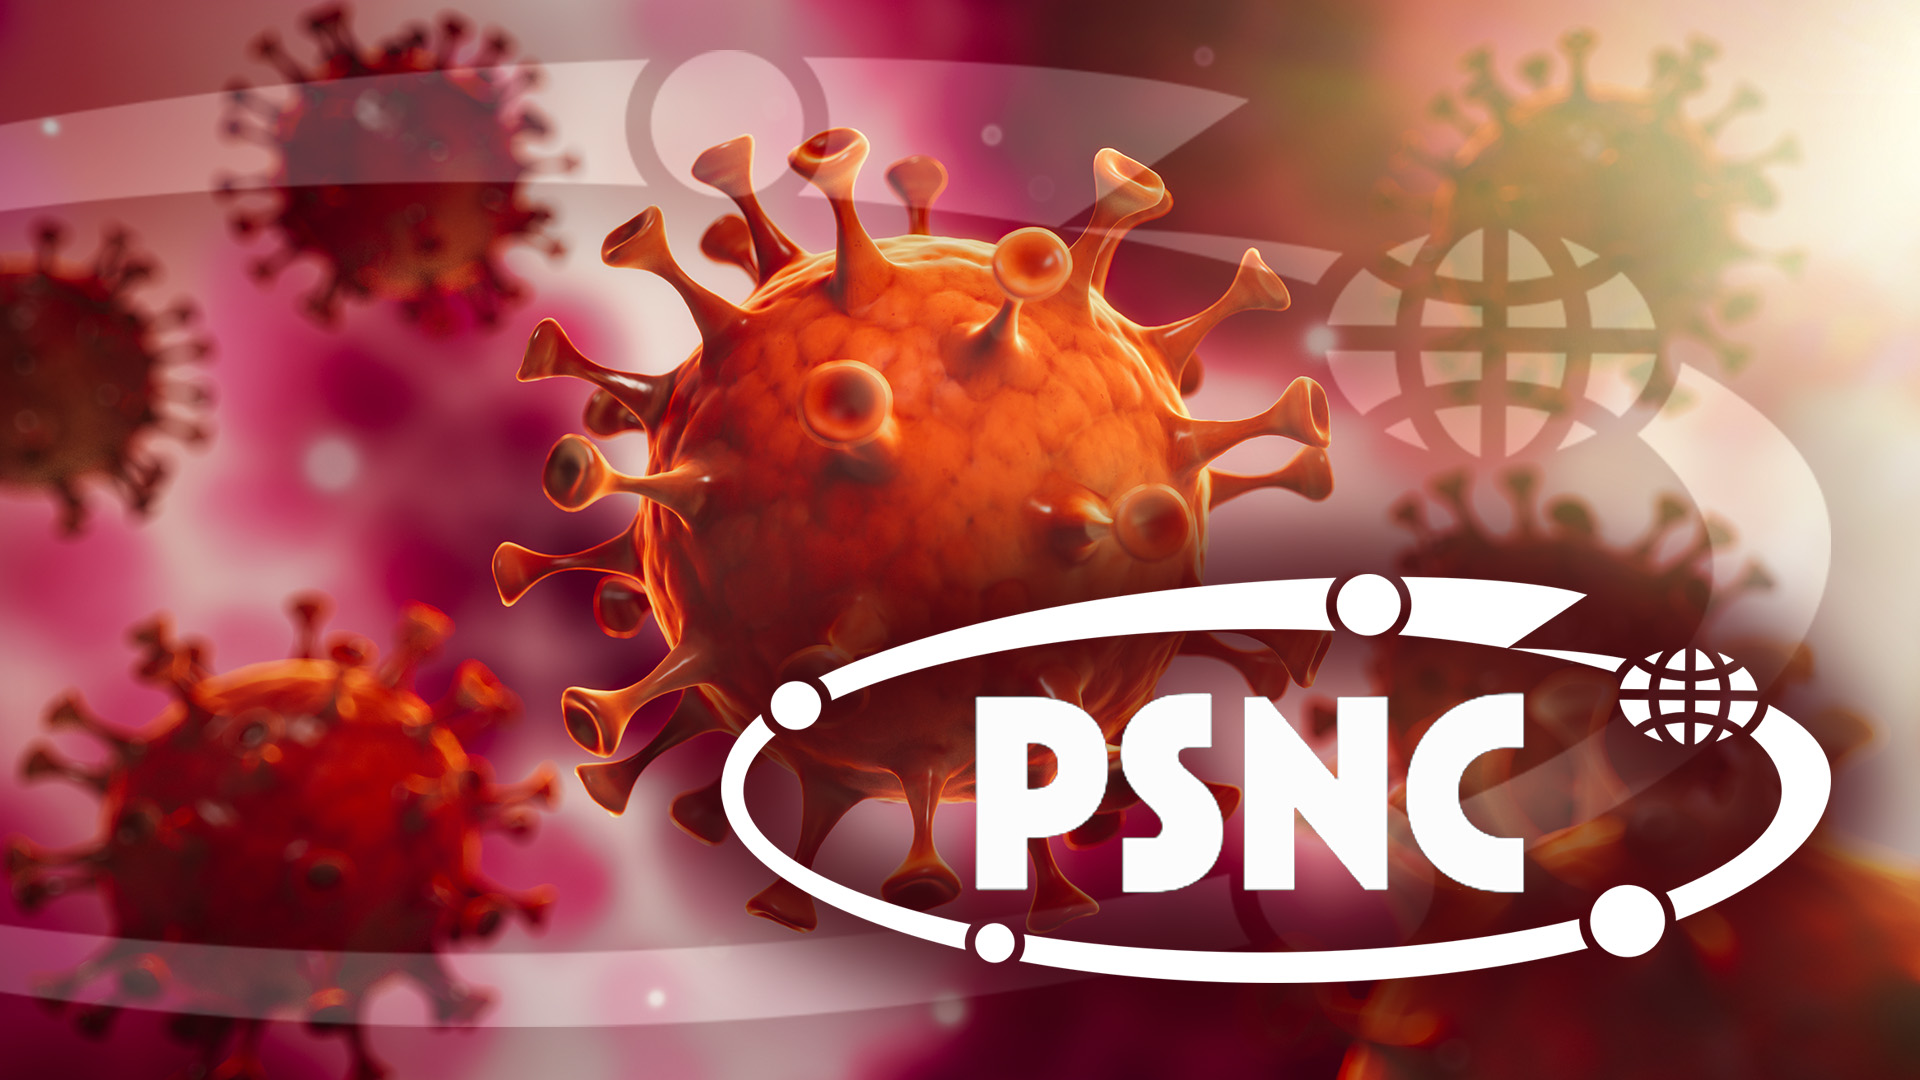 PSNC activity during the coronavirus pandemic and associated mass quarantine